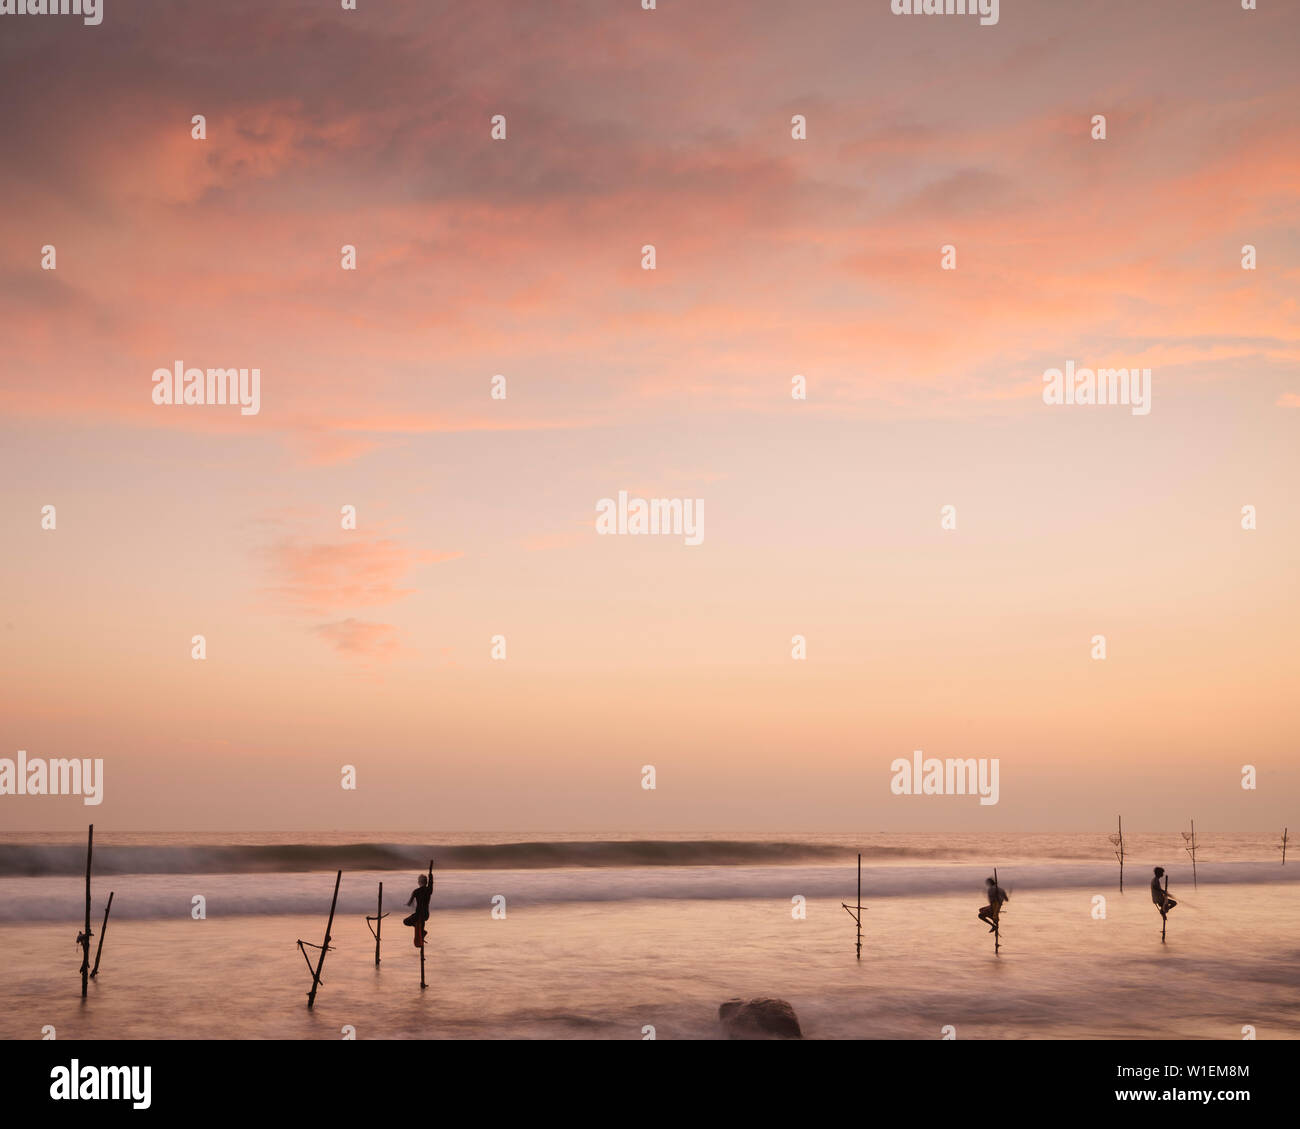 Pêcheurs sur pilotis au crépuscule, Weligama, Côte Sud, Sri Lanka, Asie Banque D'Images